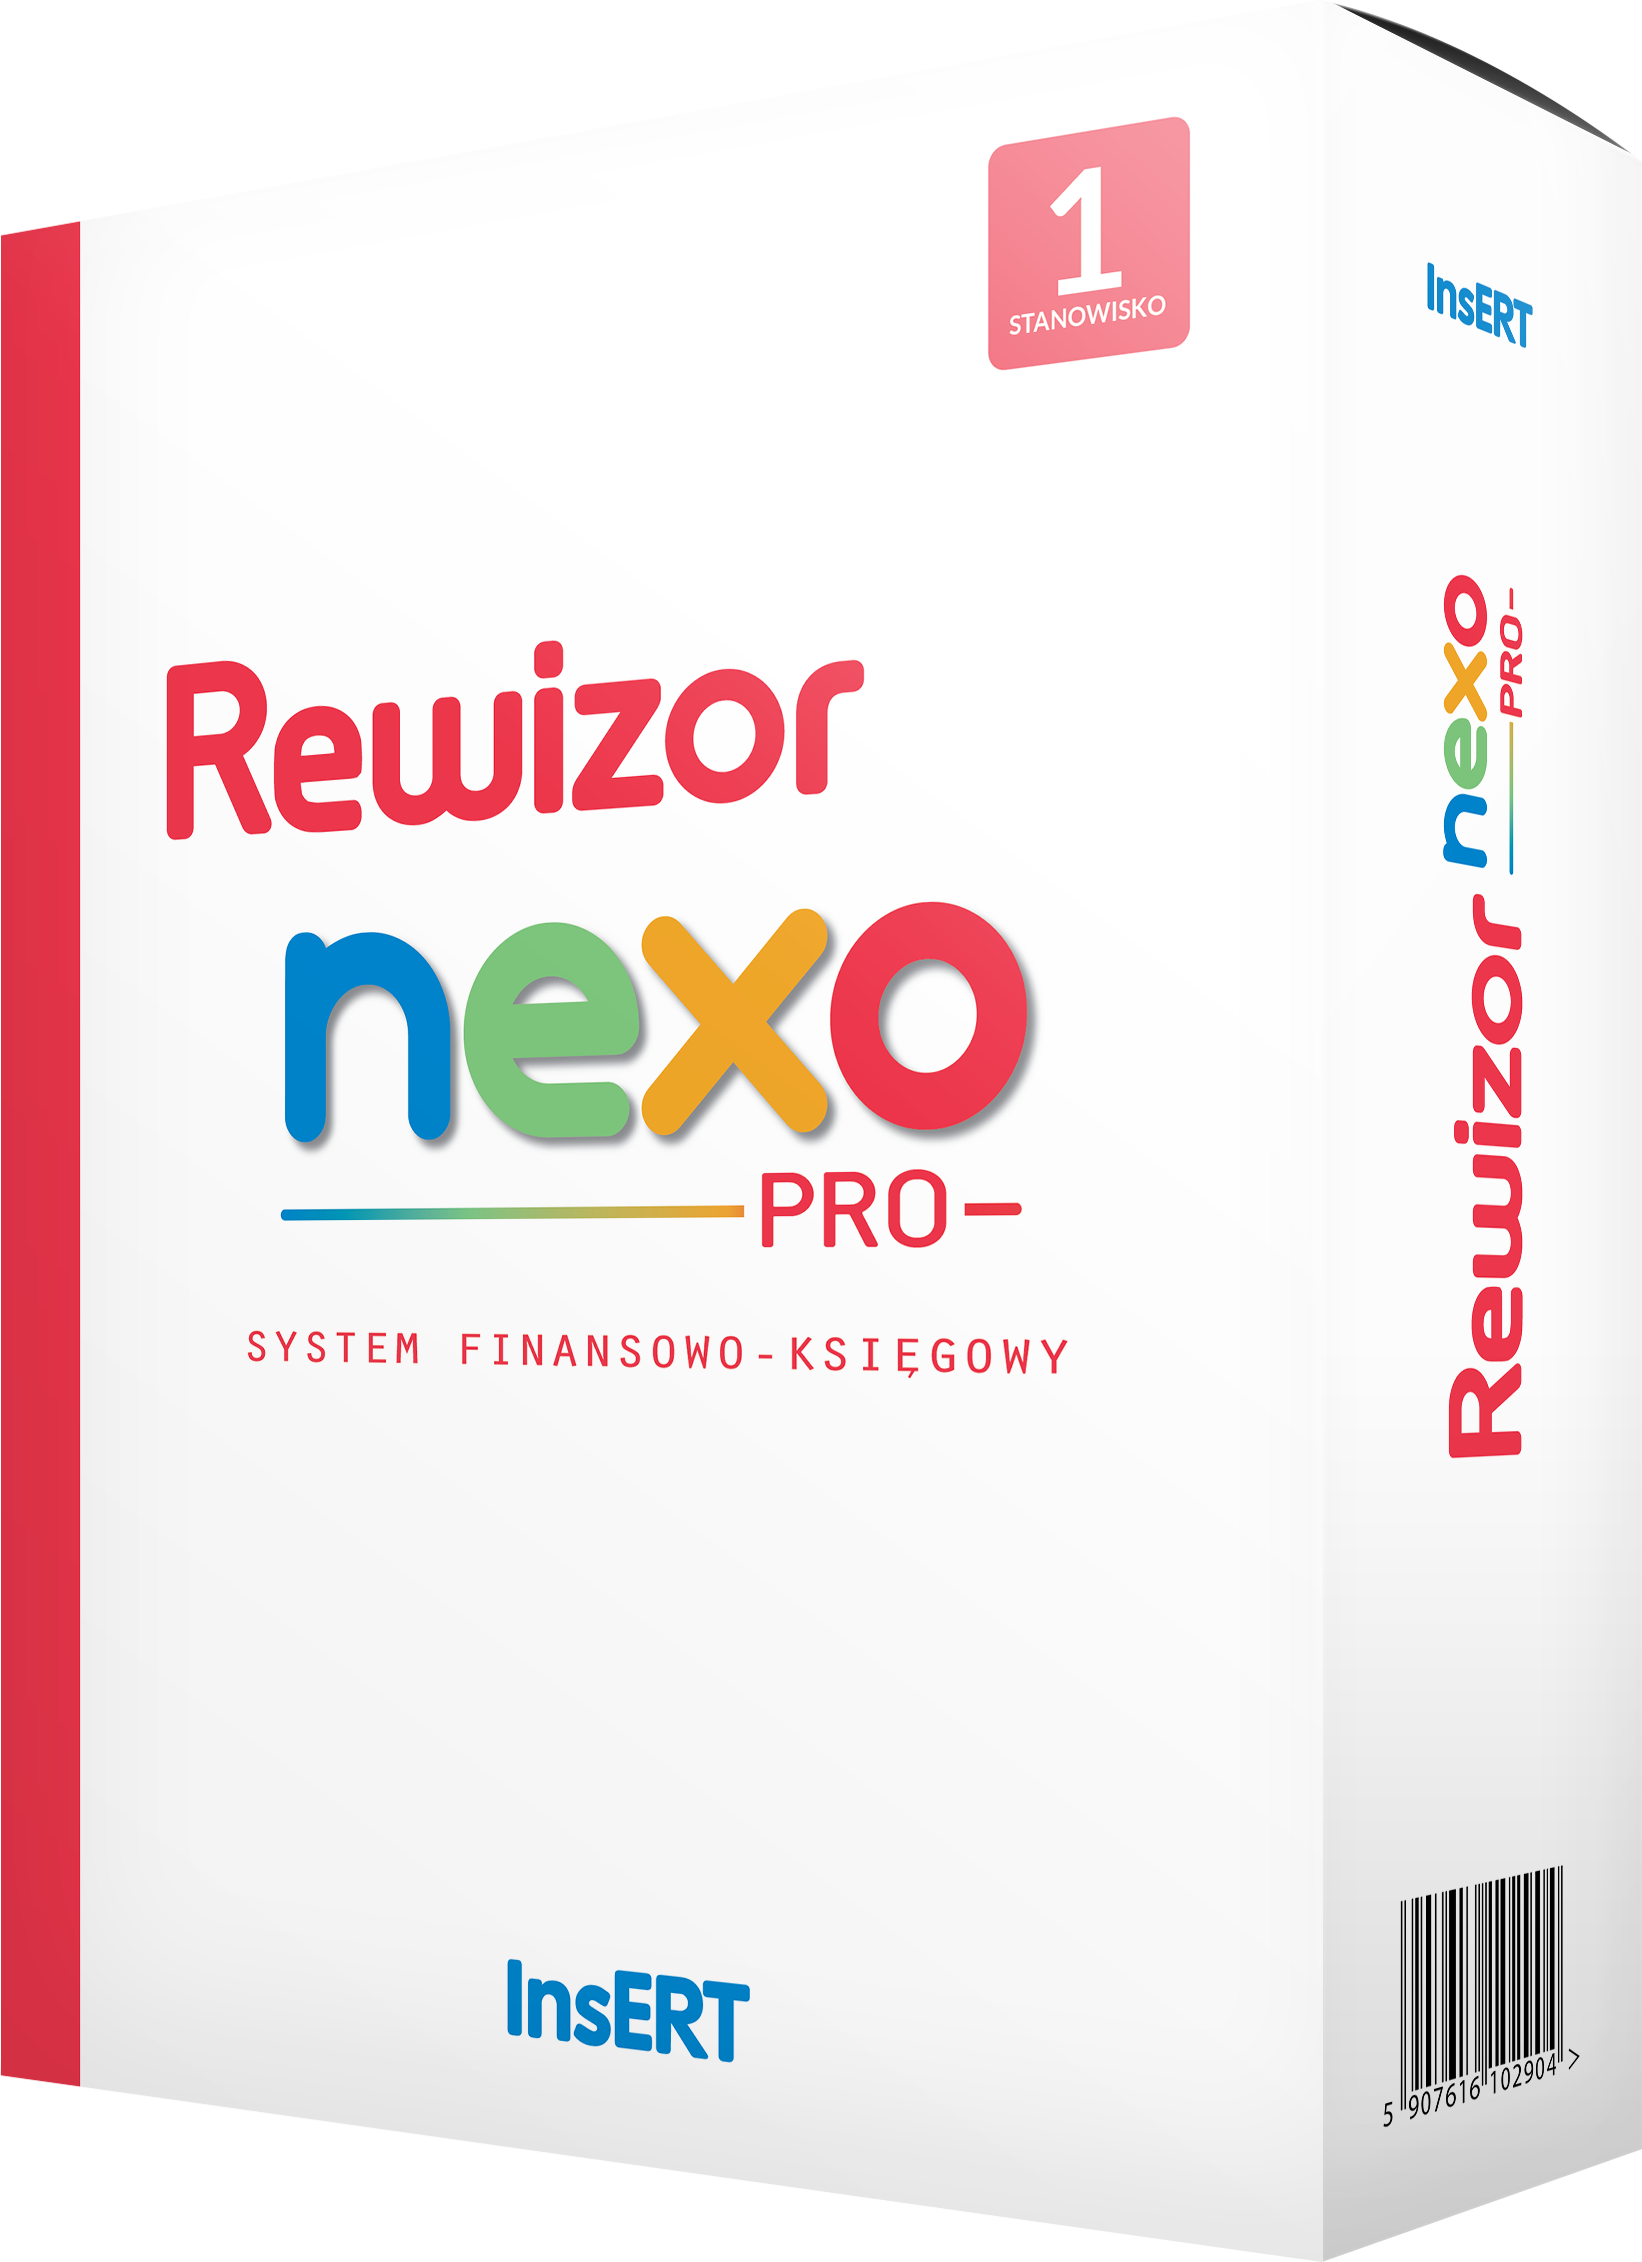 Rewizor nexo PRO + 1 stanowisko upgrade z GT Rewizor